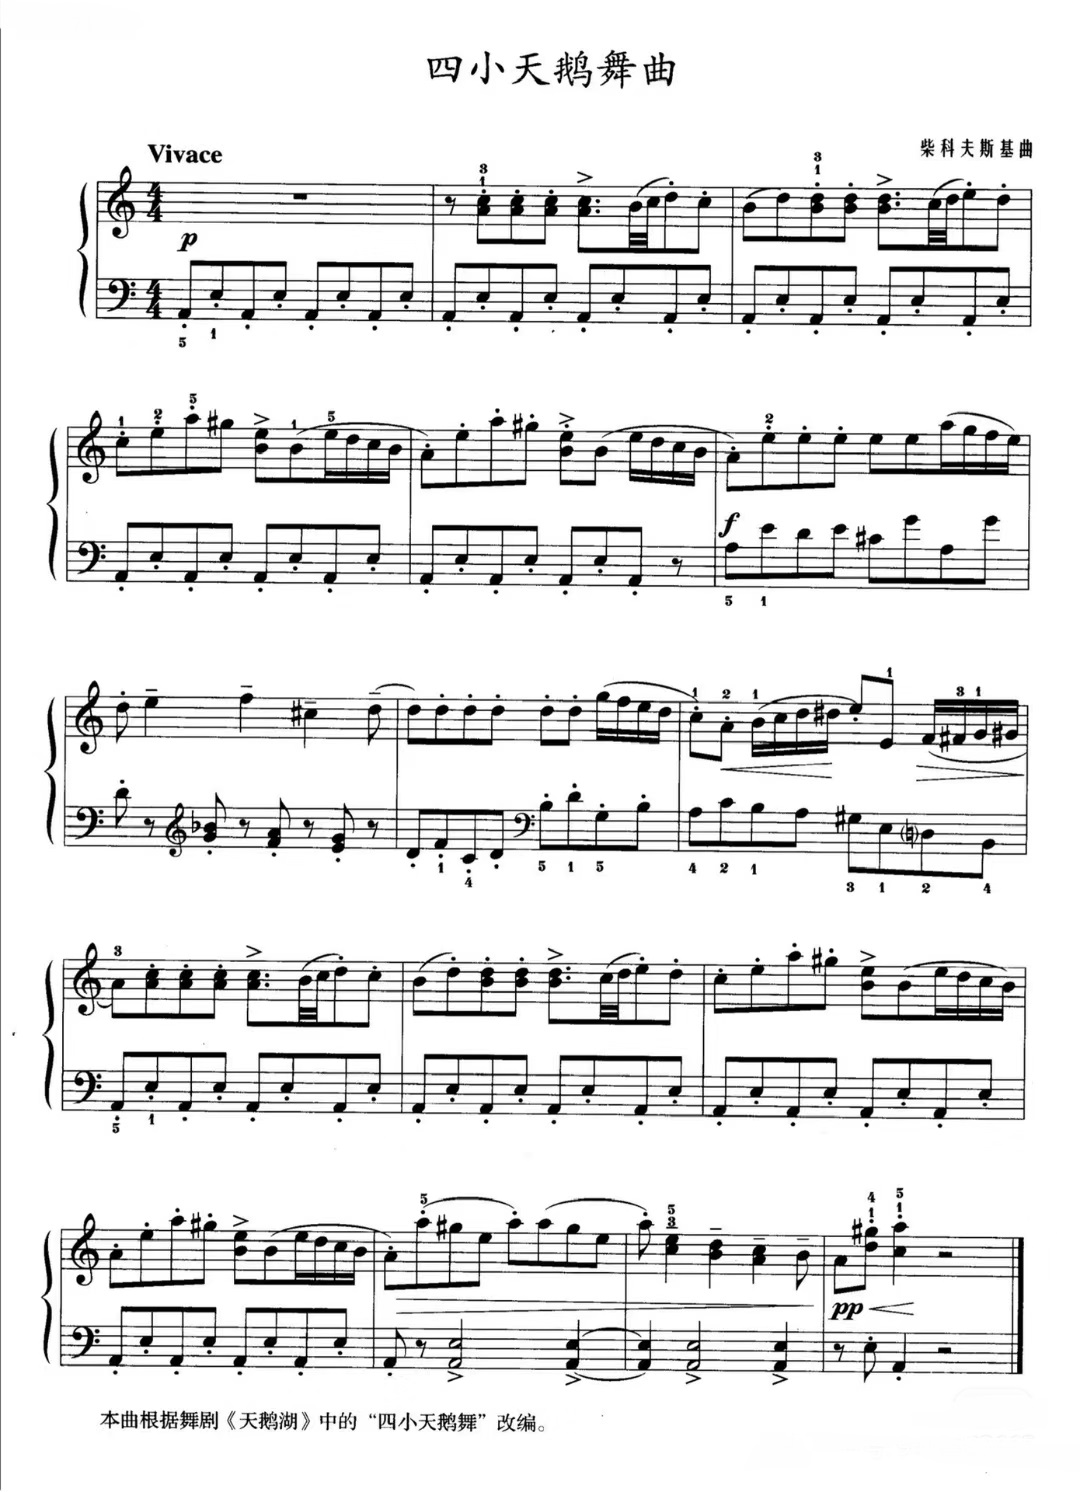 【四小天鹅】的钢琴谱简谱 – 柴可夫斯基